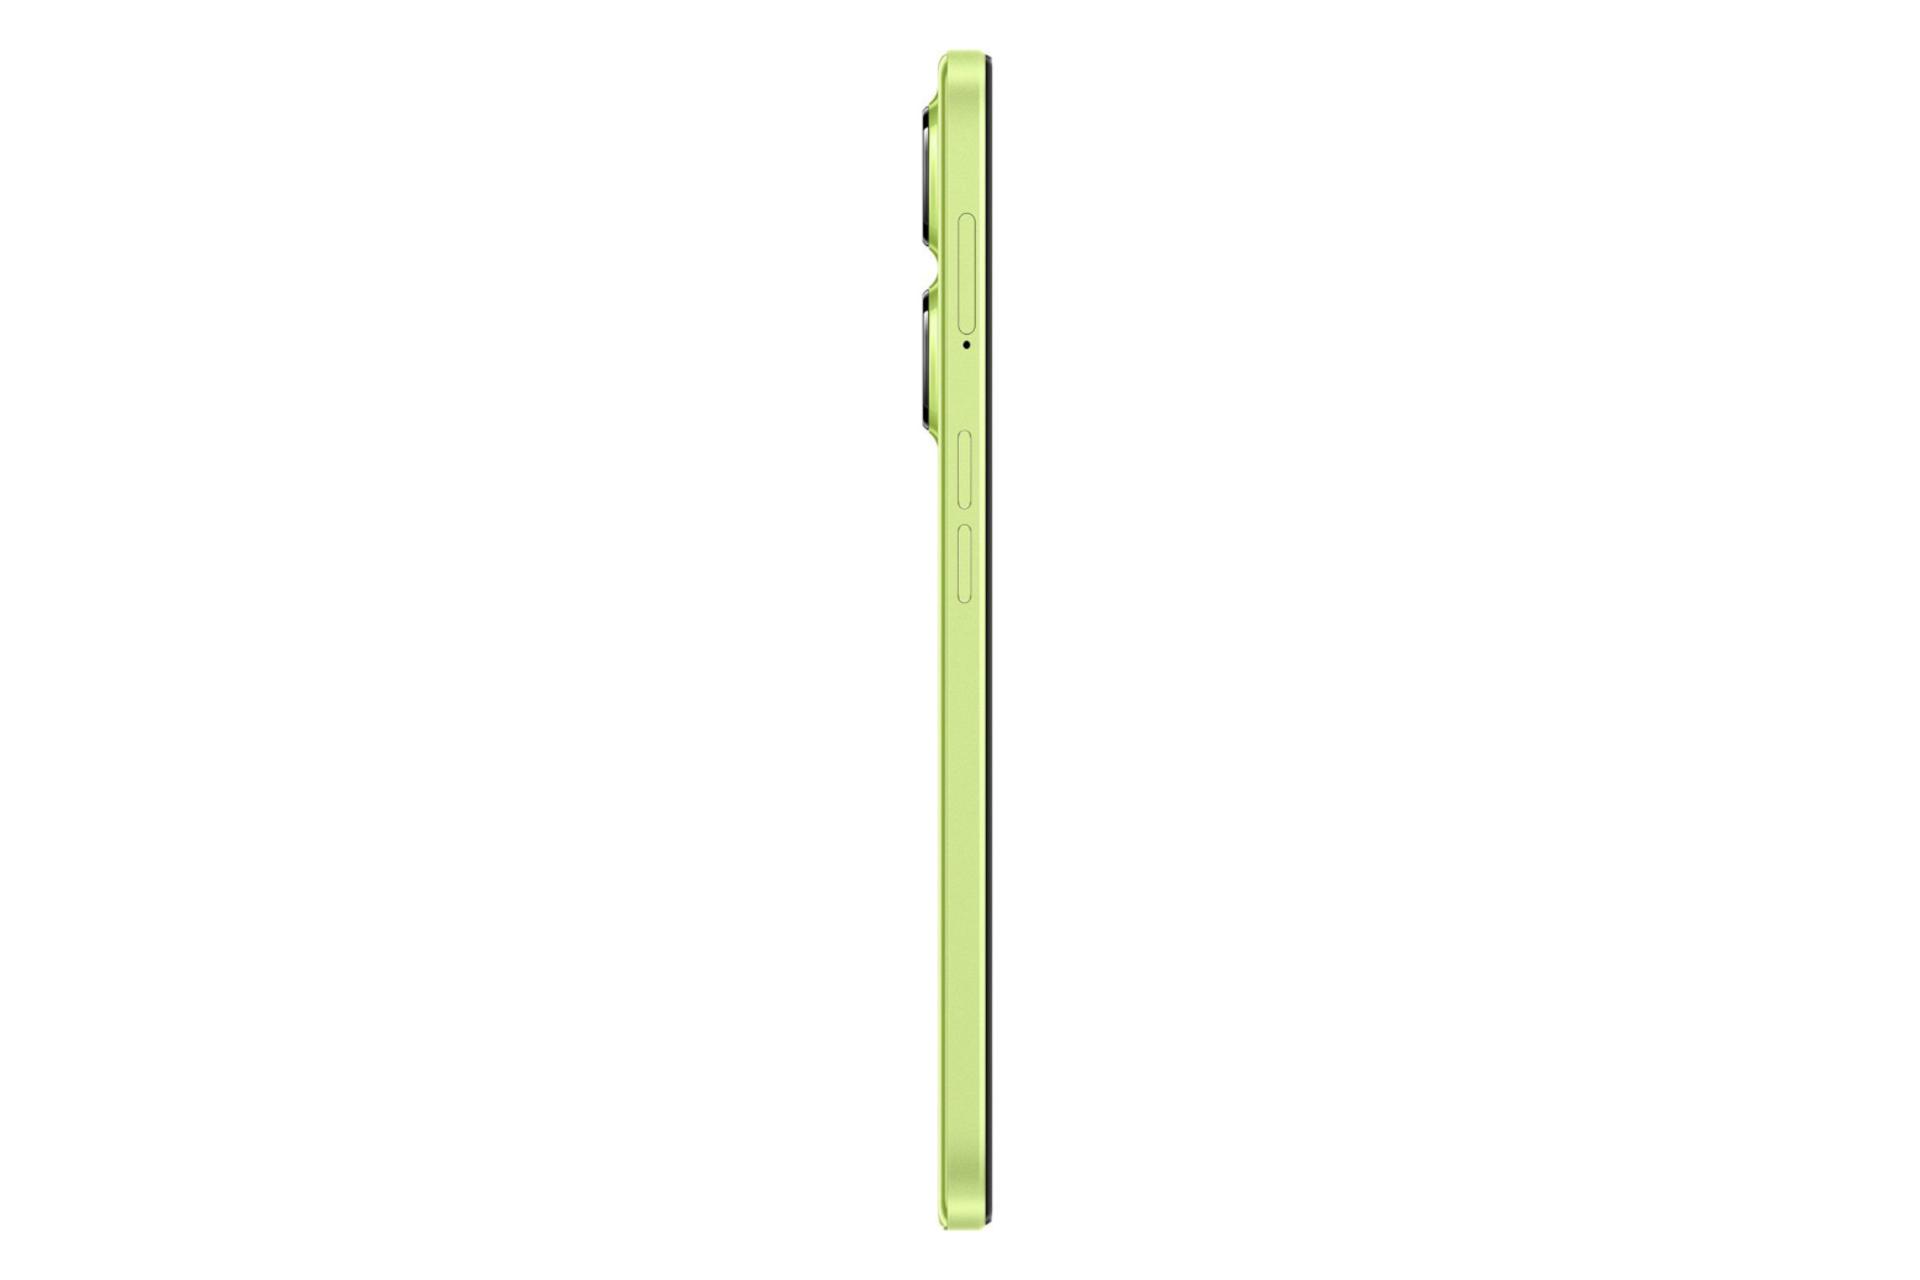 نمای جانبی گوشی موبایل وان پلاس نورد CE 3 لایت / OnePlus Nord CE 3 Lite سبز لیمویی